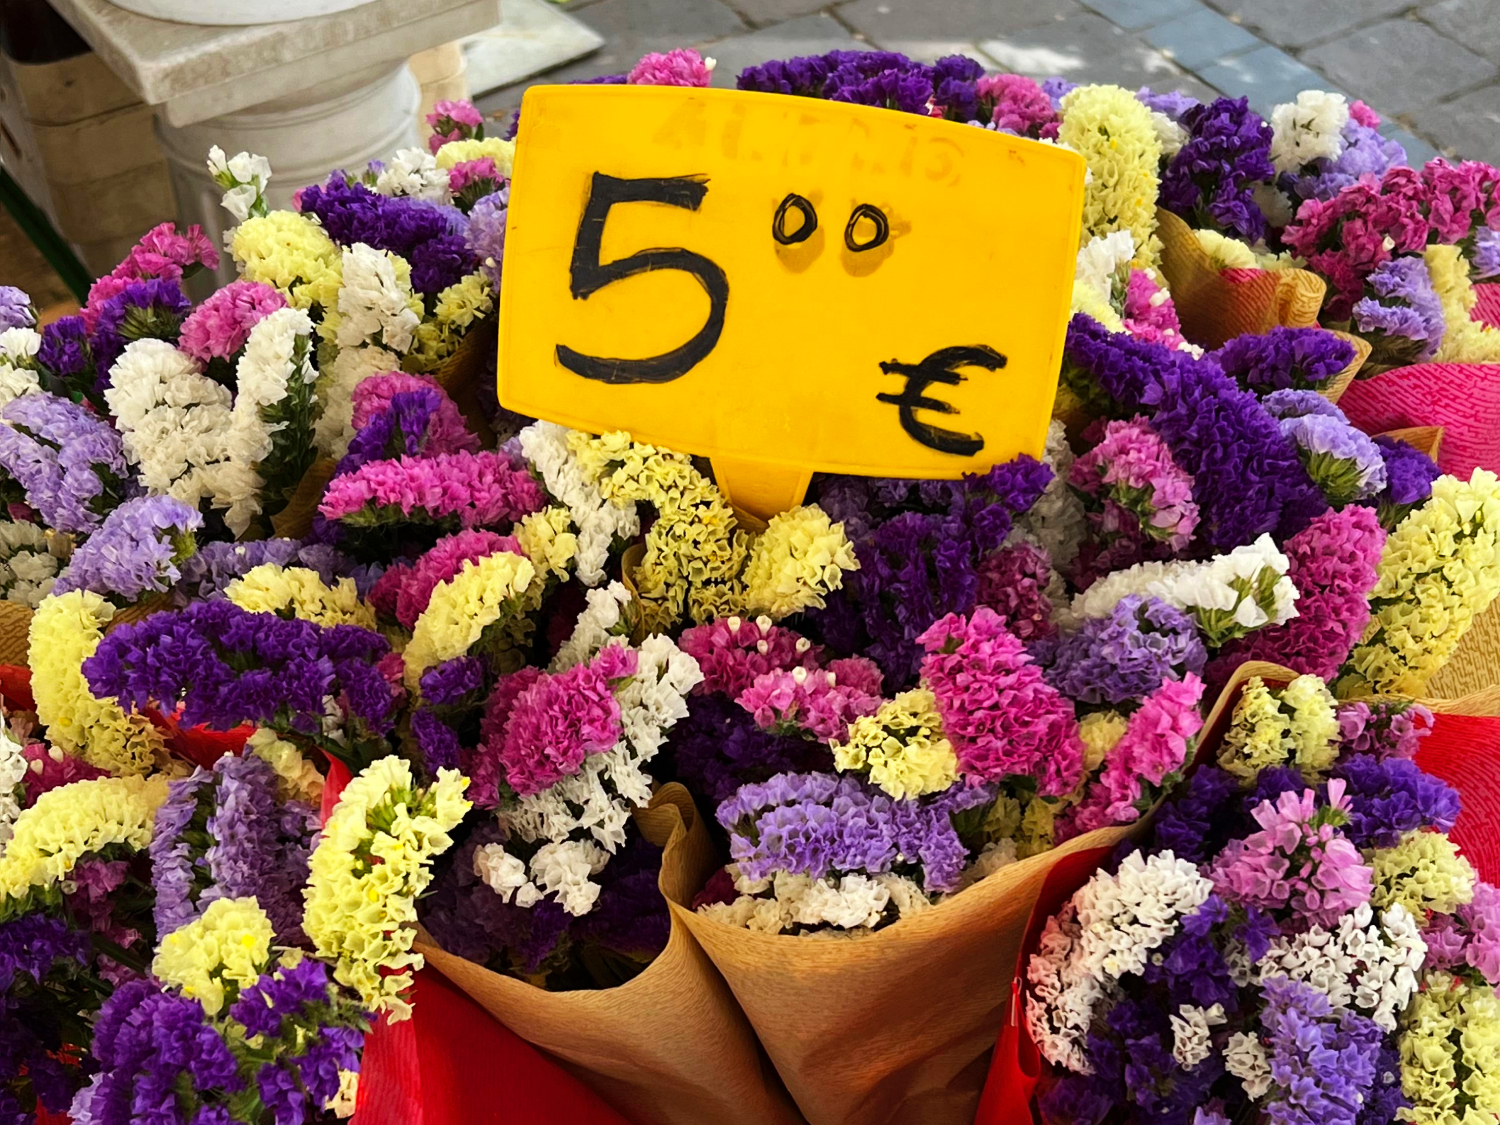 Flower Market, La Latina, Madrid